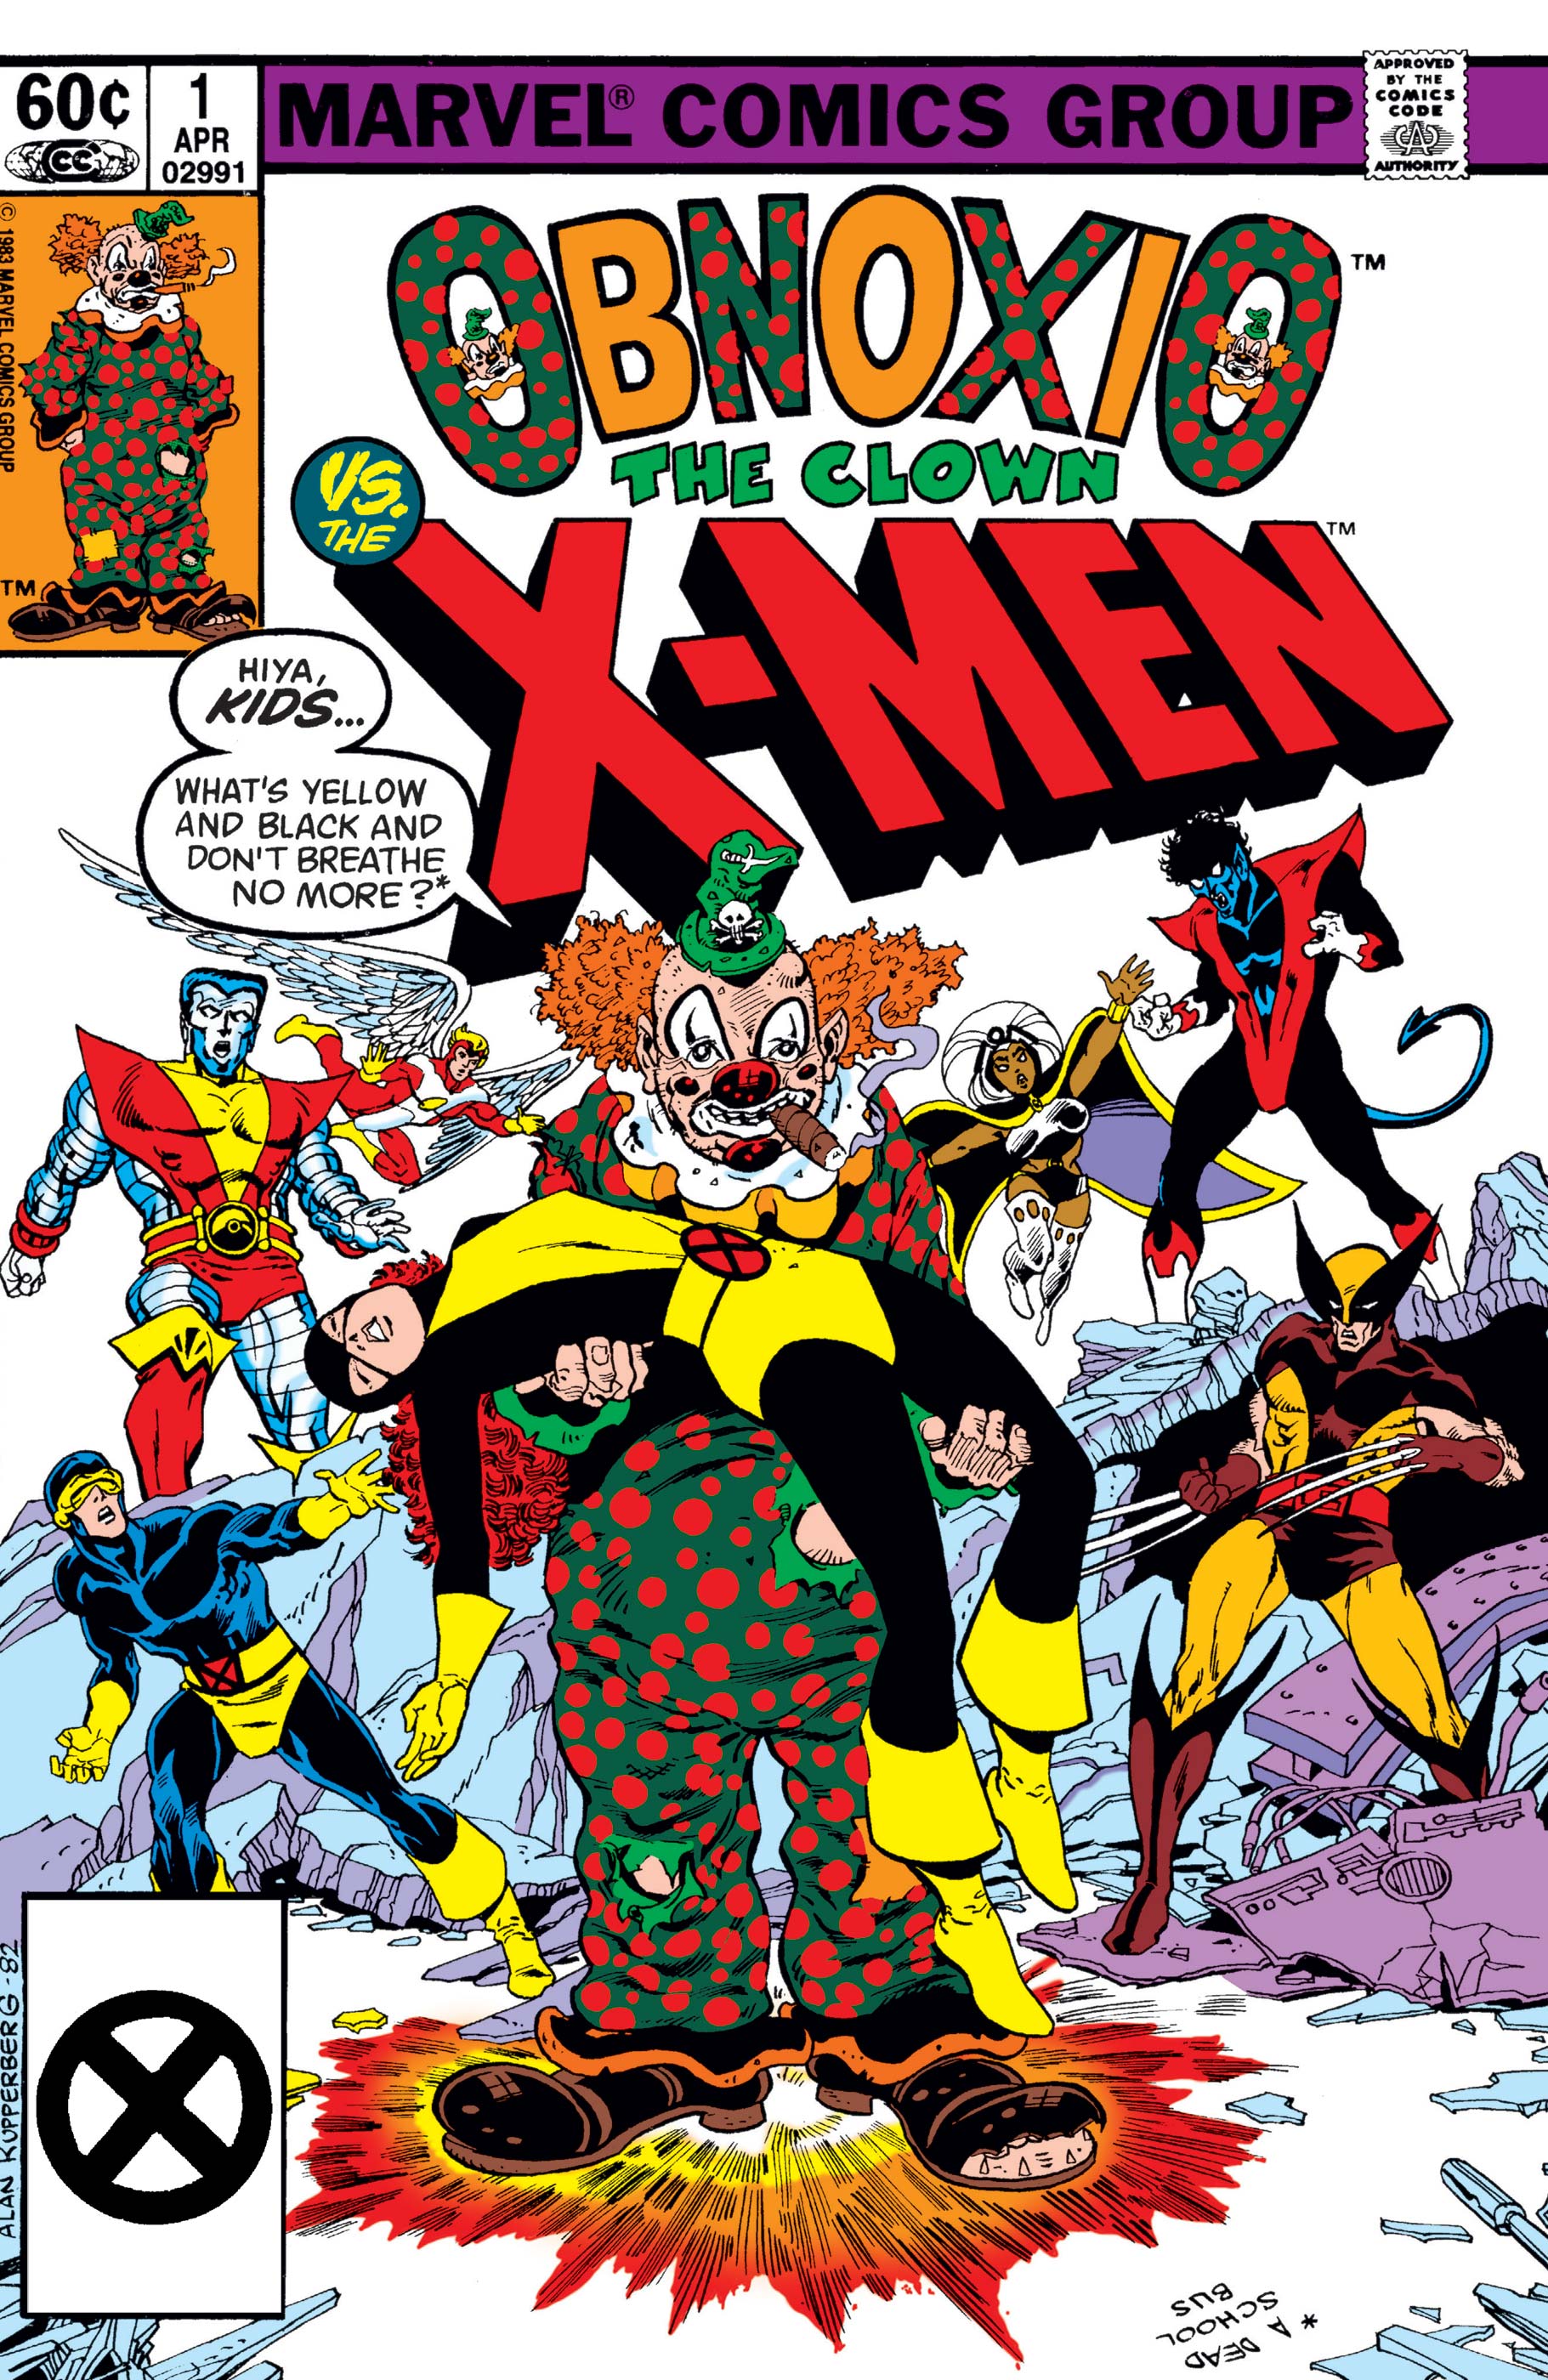 Obnoxio The Clown vs. X-Men (1983) #1